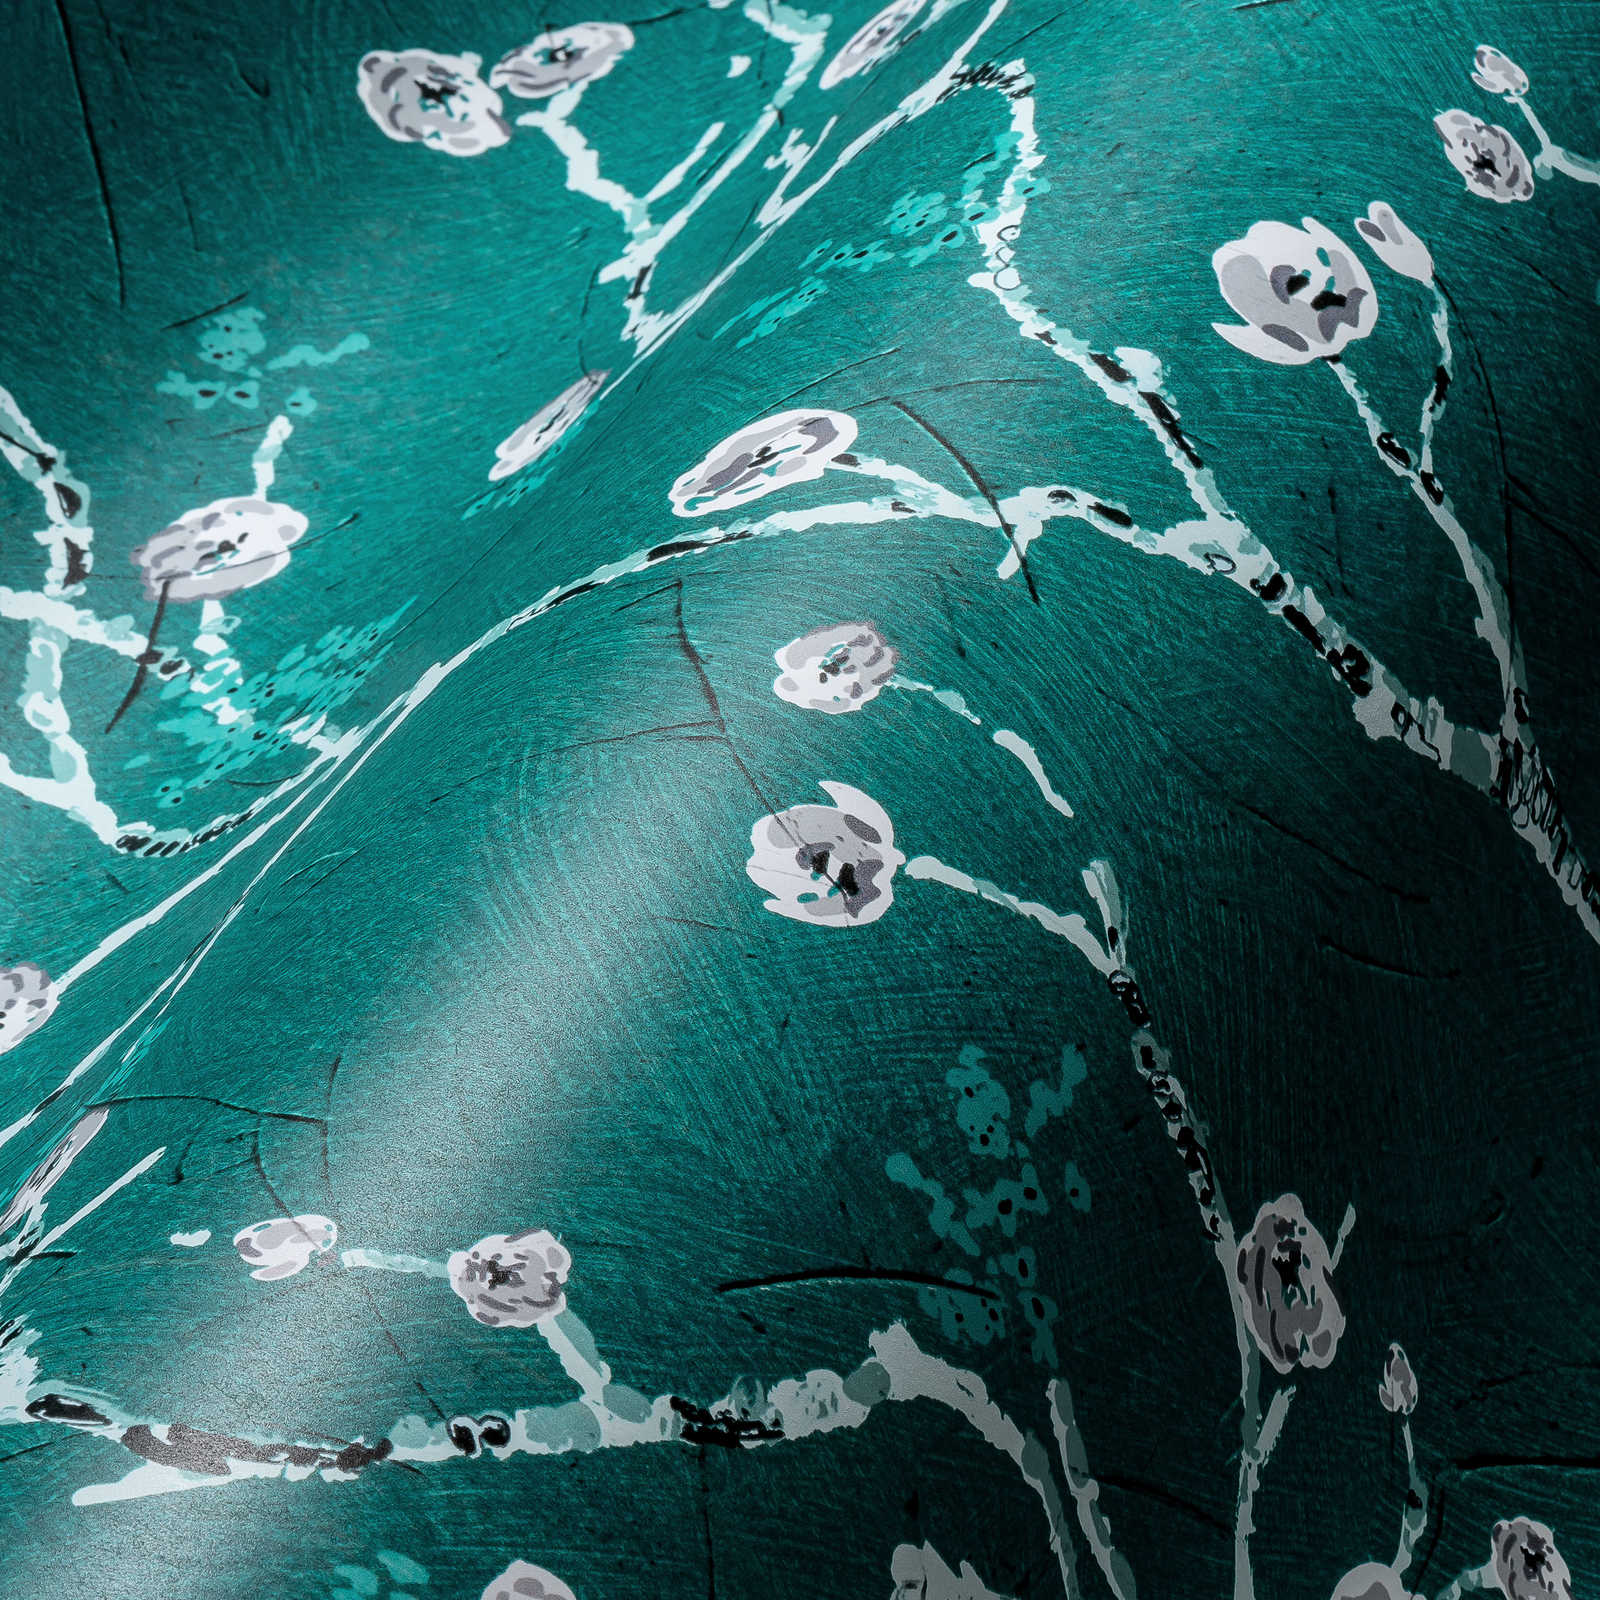             Donkergroen behang met bloemmotief in Aziatische stijl
        